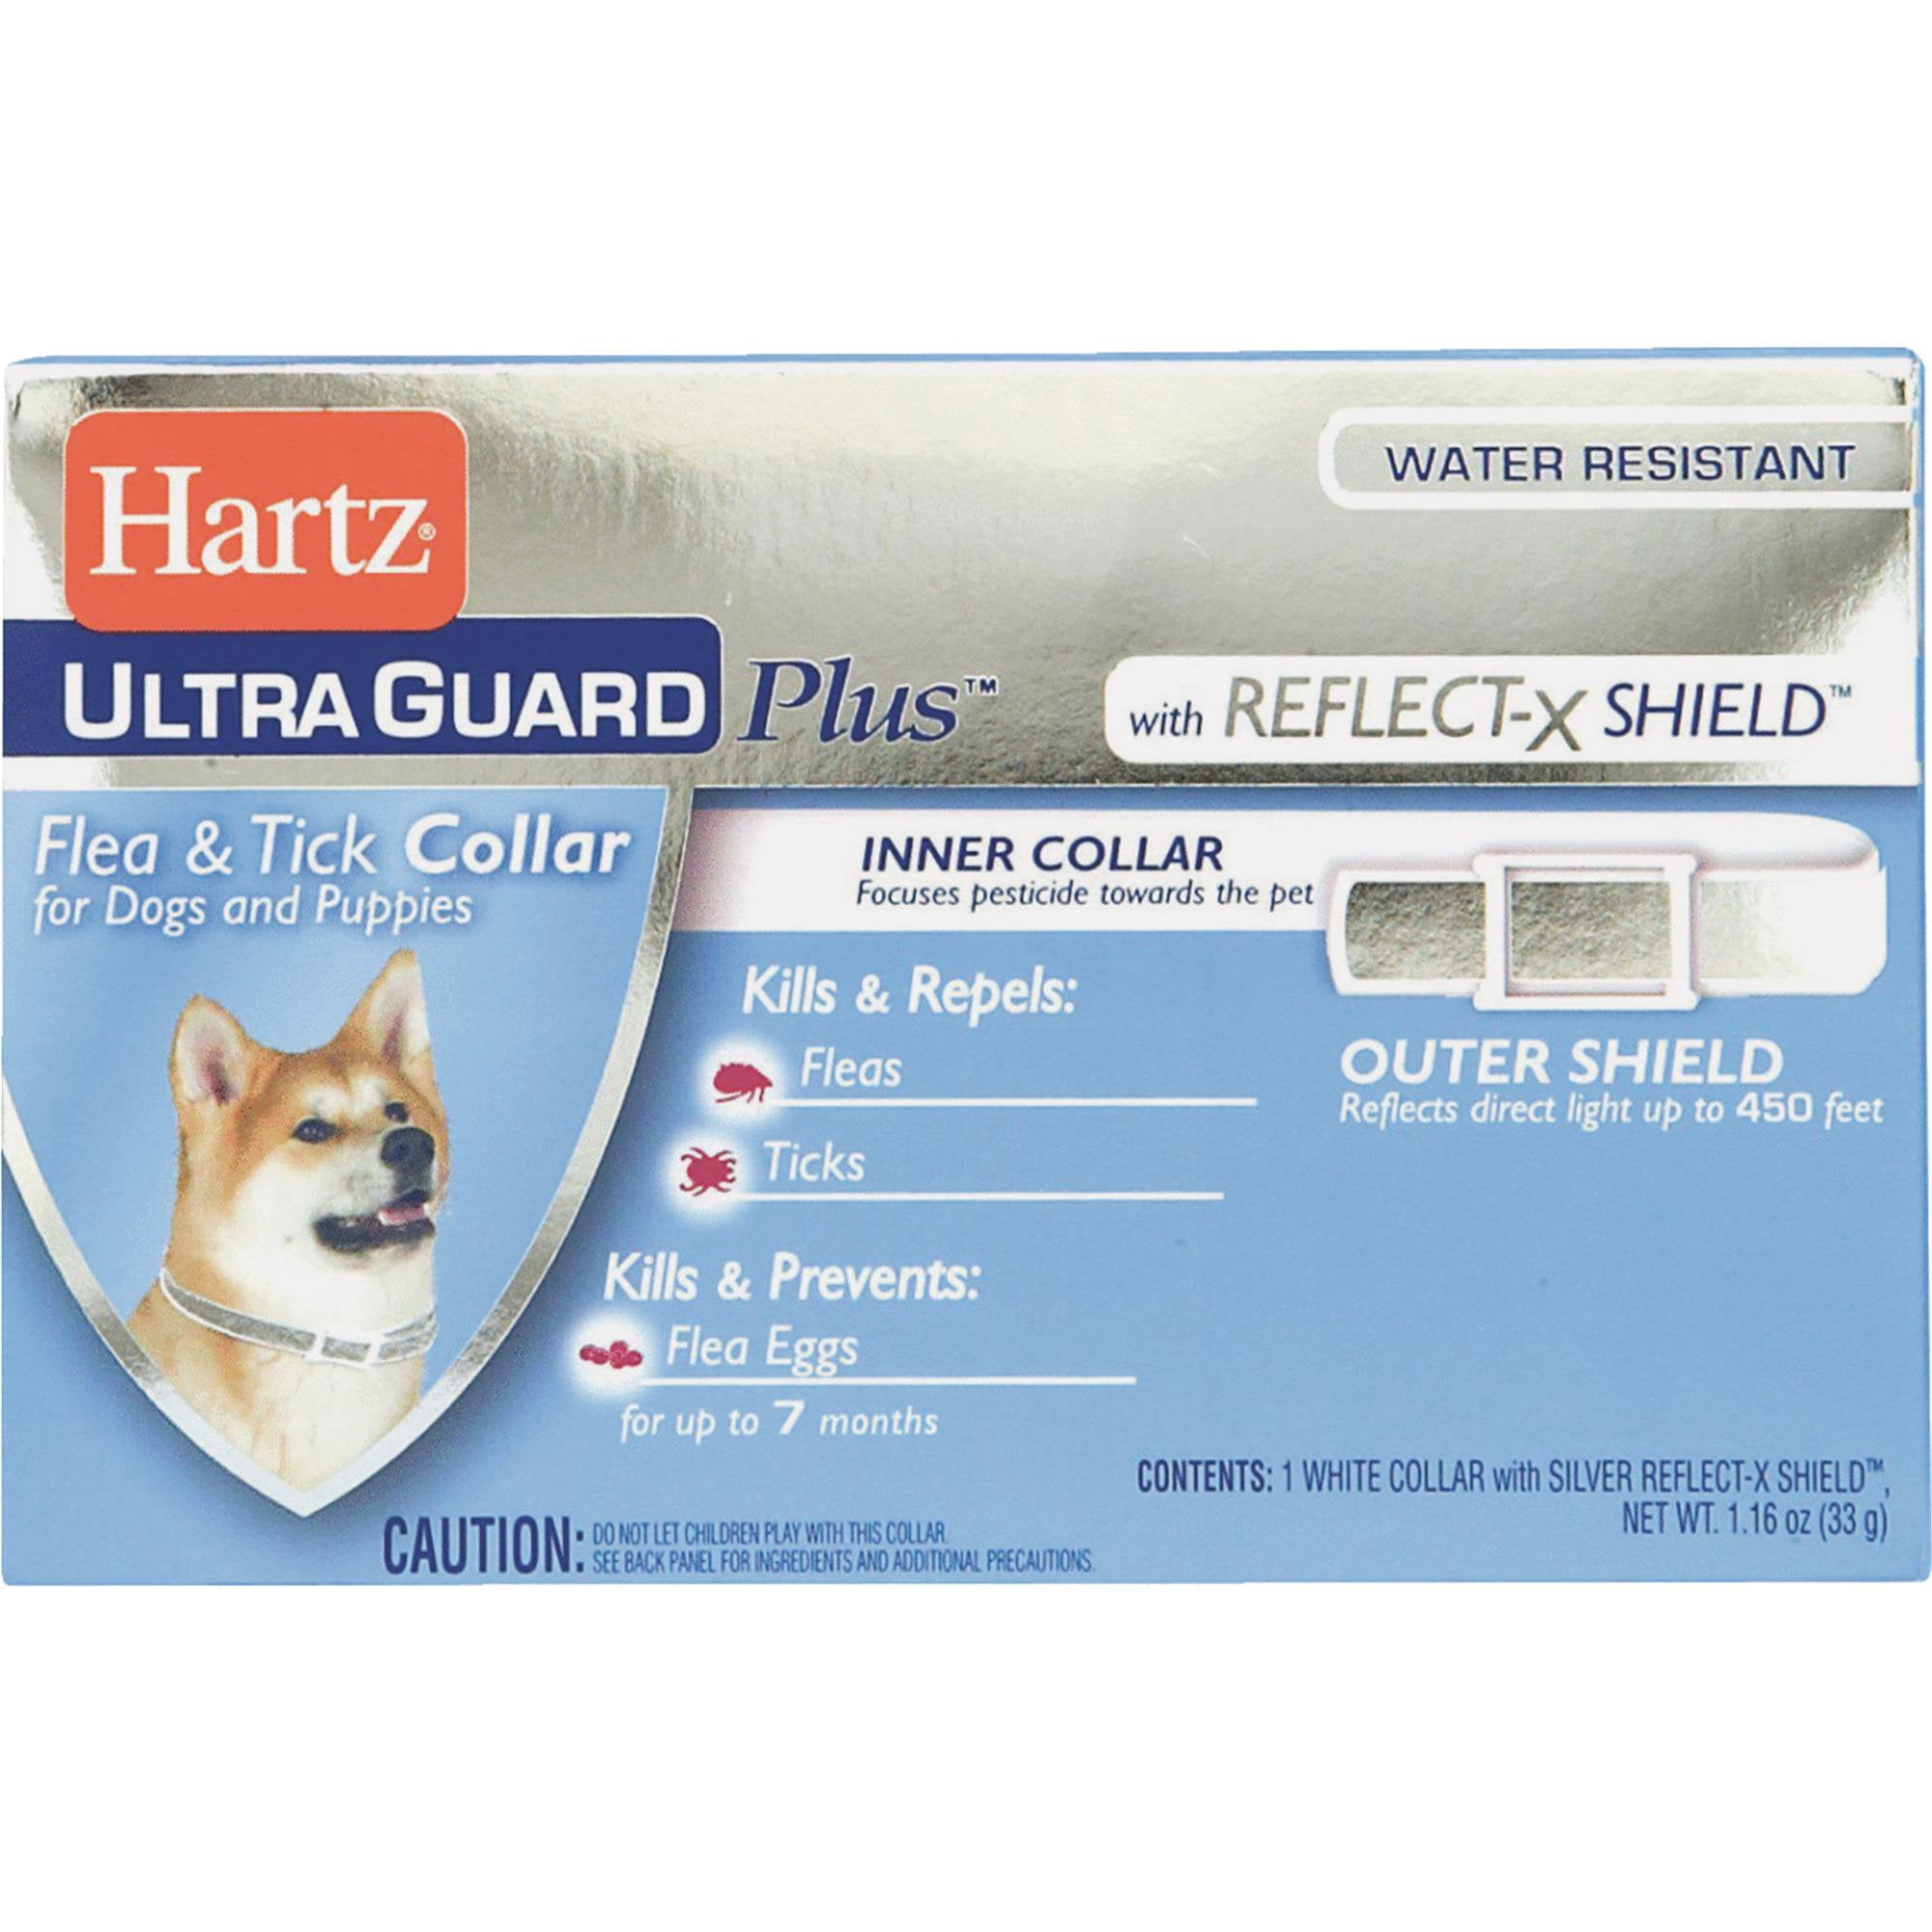 Hartz Ultra Guard Pro Flea & Tick Drops *3 Treatments + Hartz Flea & Tic  Collar